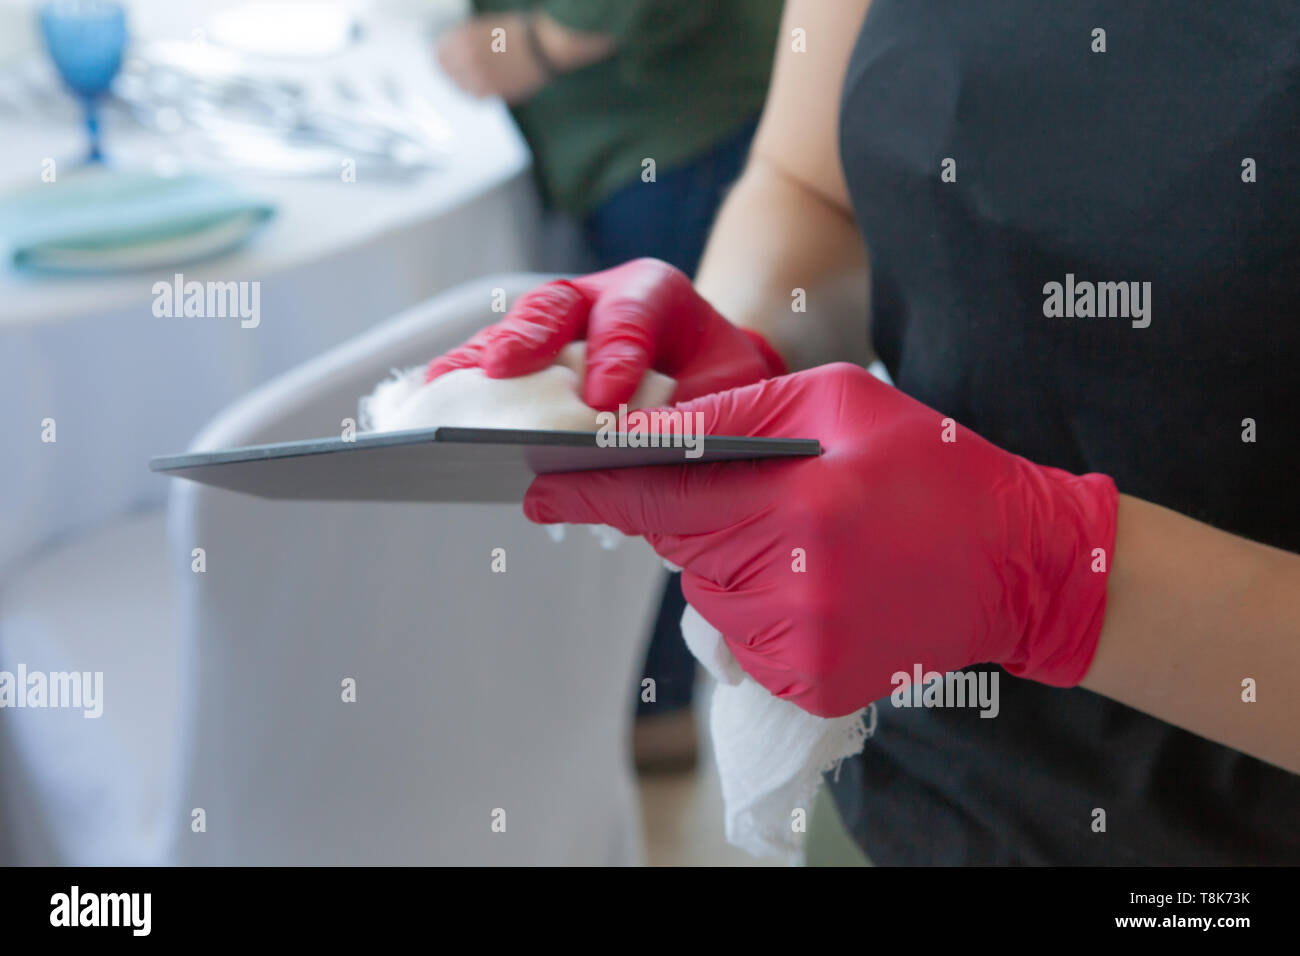 La fille en rouge gants nettoie la plaque, la préparation de la célébration du mariage Banque D'Images